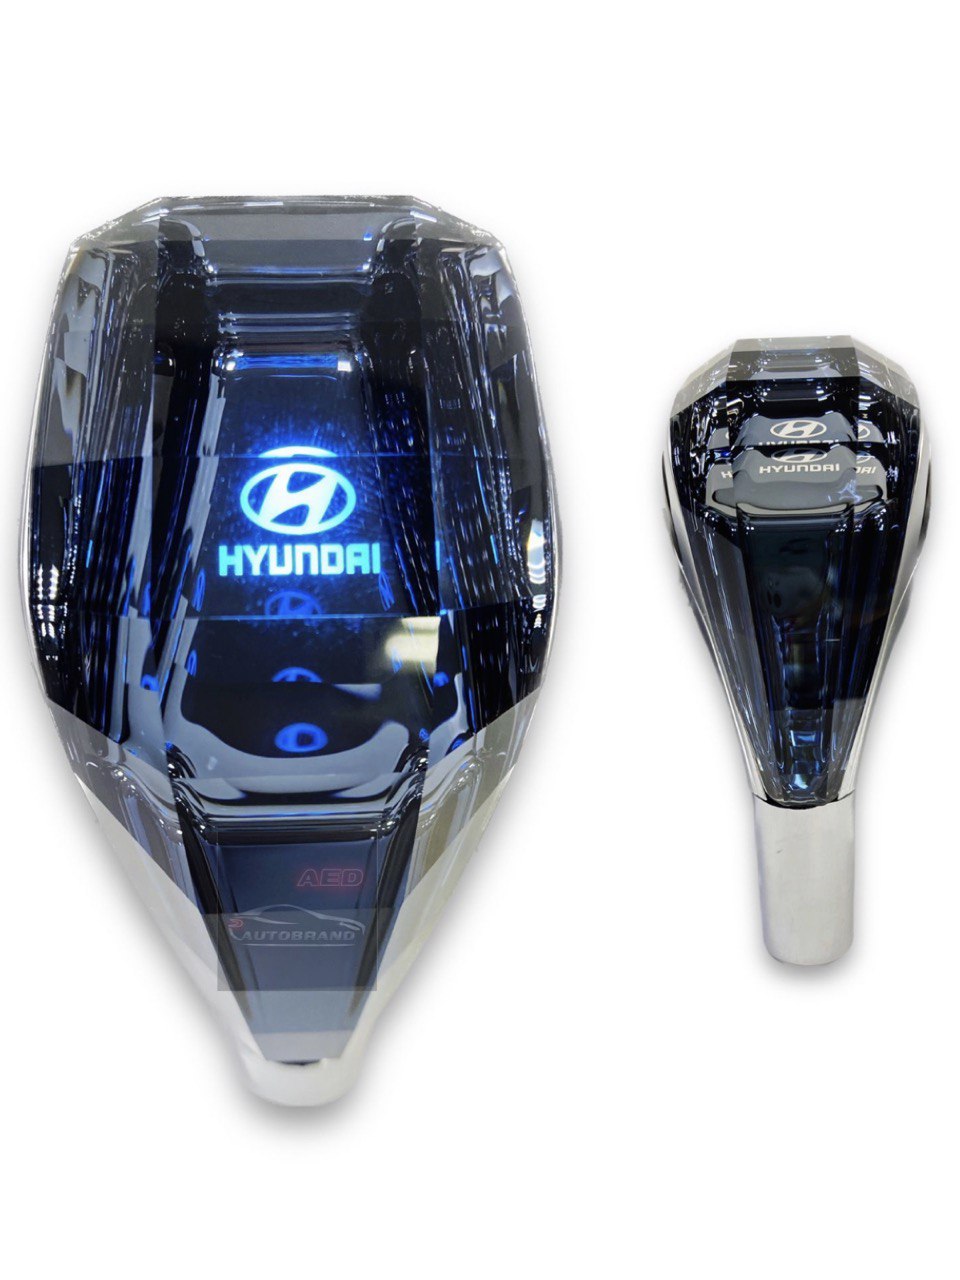 Ручка кпп Autobrand_AED на Hyundai, акпп с подсветкой KPP_Hyundai, 1 шт